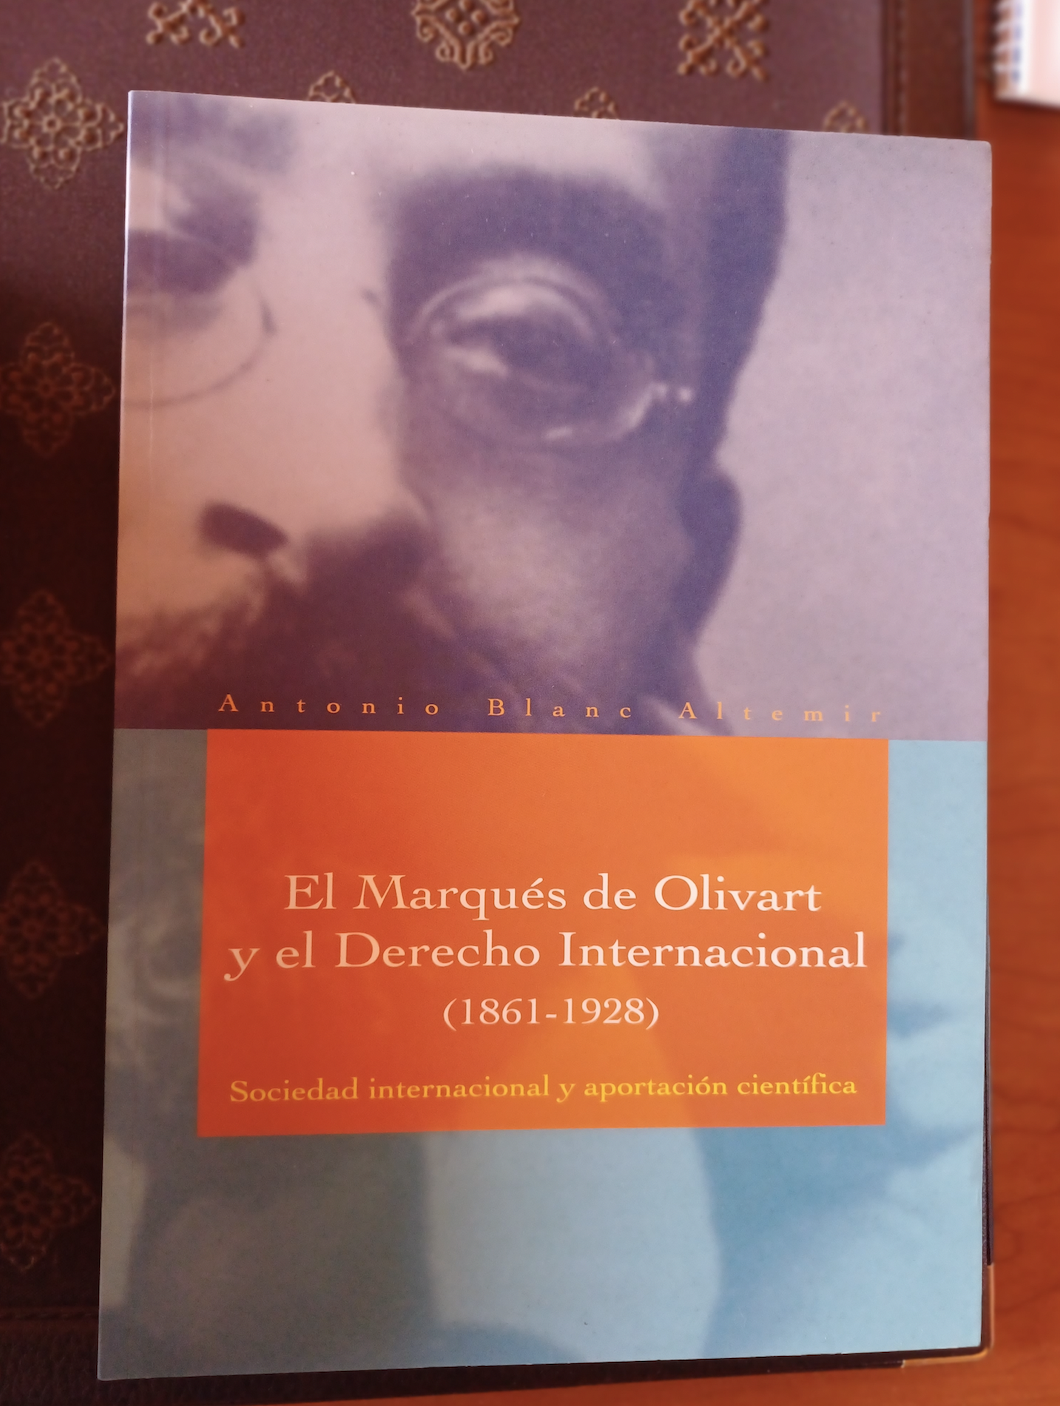 El Marqués de Olivart y el derecho internacional 18611928 sociedad internacional y aportación científica